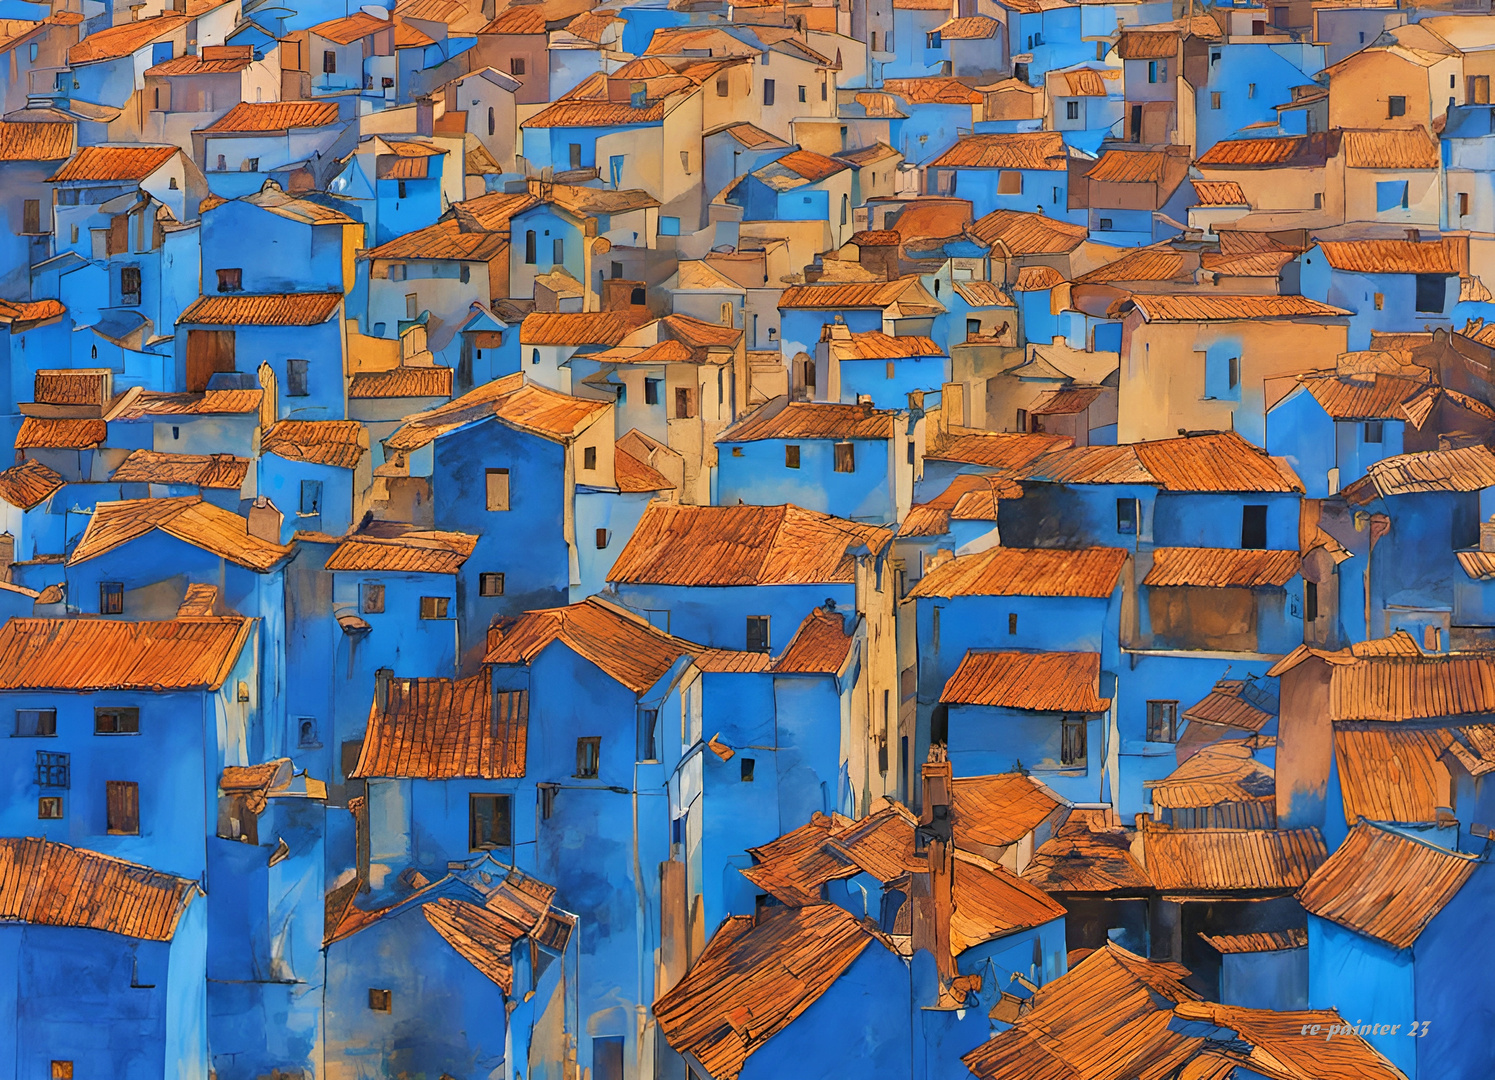 Dans le sud de l'Espagne, un village Júzcar est entièrement coloré en bleu,